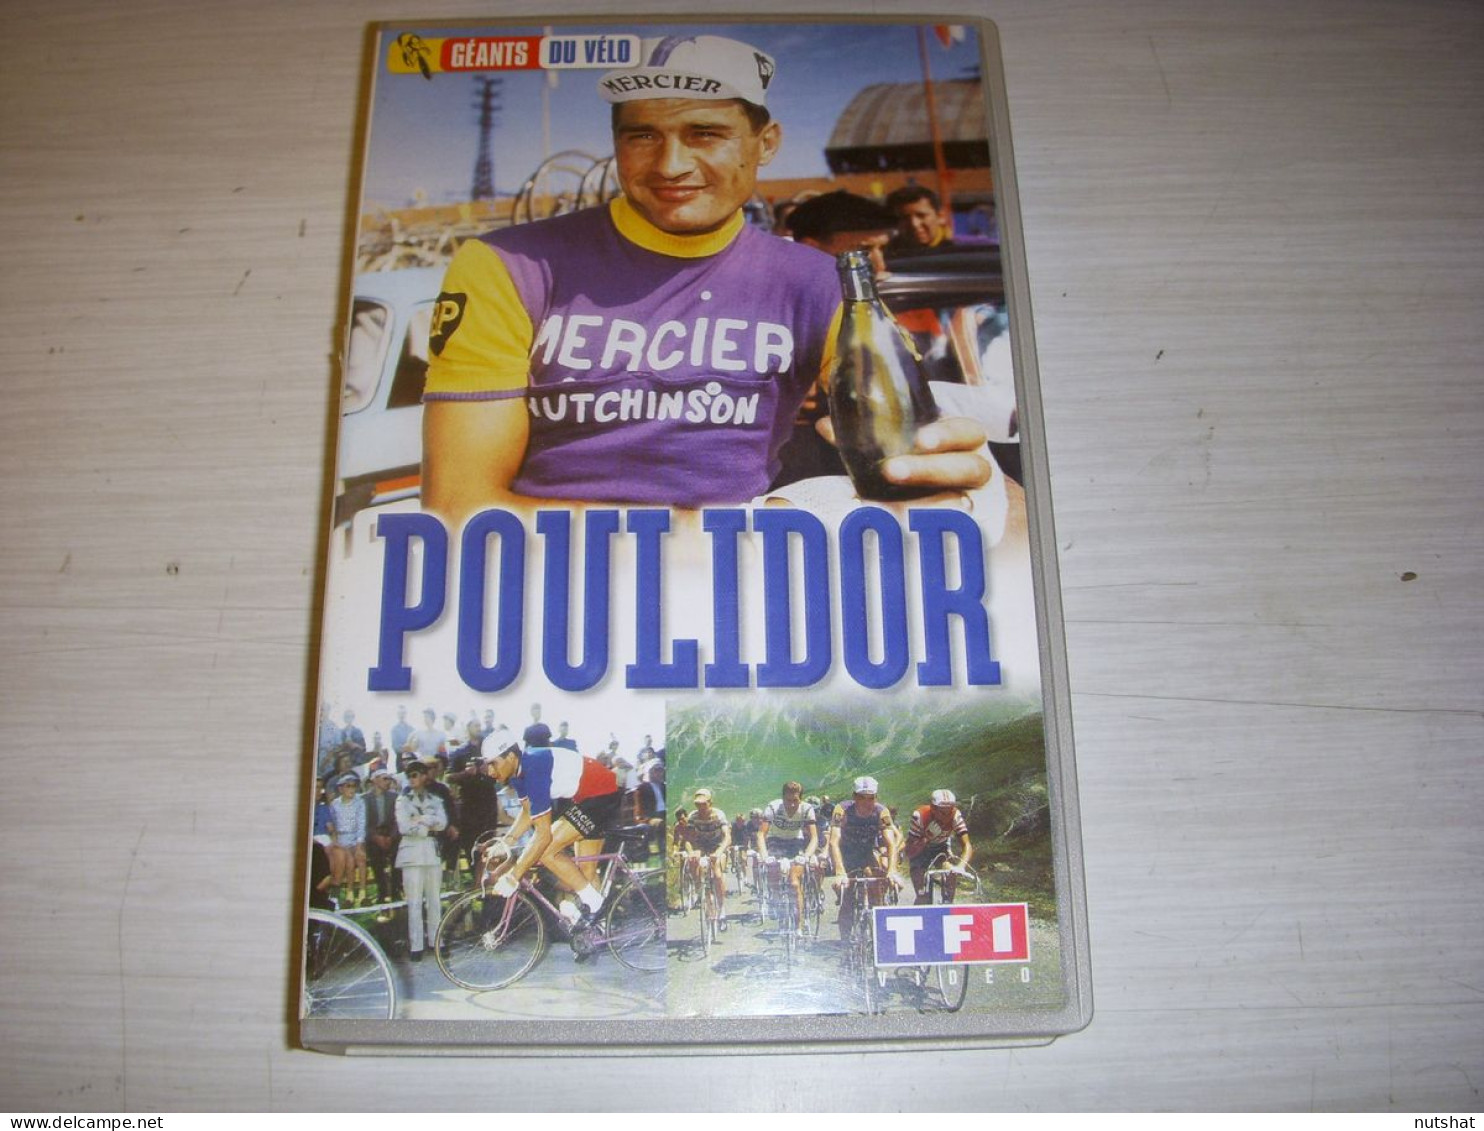 CYCLISME CASSETTE VHS Les GEANTS Du VELO Raymond POULIDOR 52mn - Sports